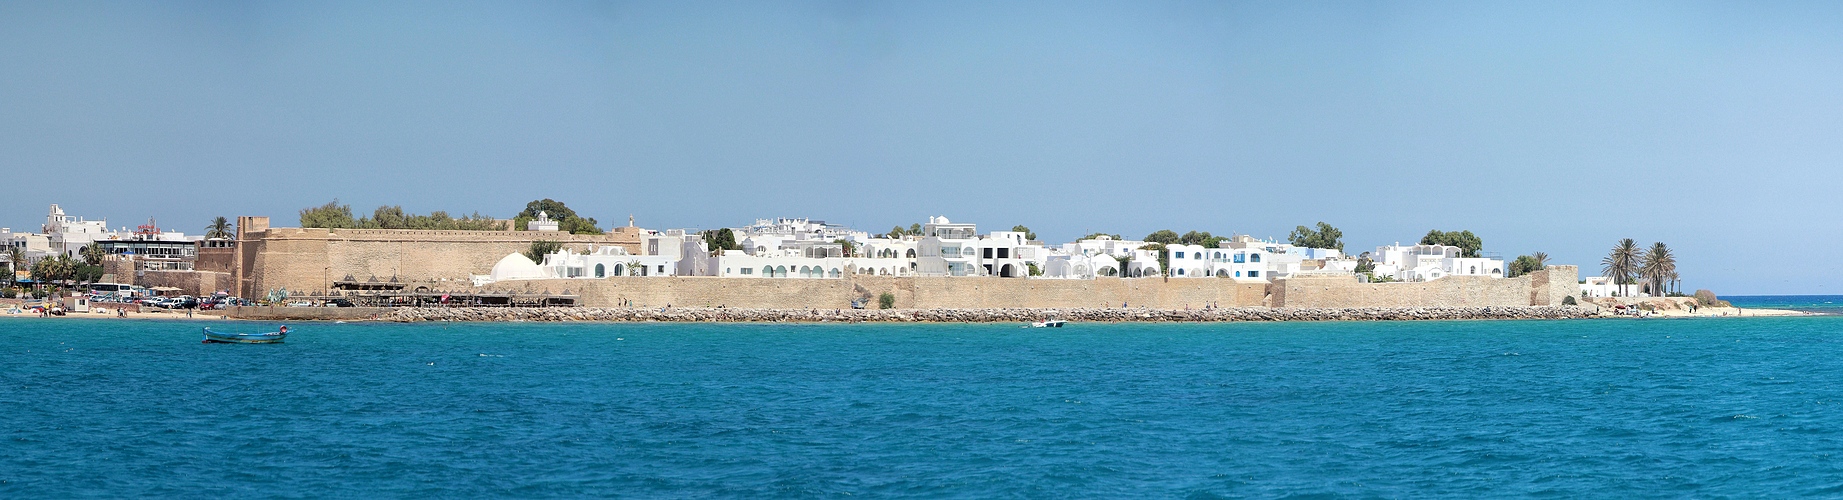 Medina am Mittelmeer